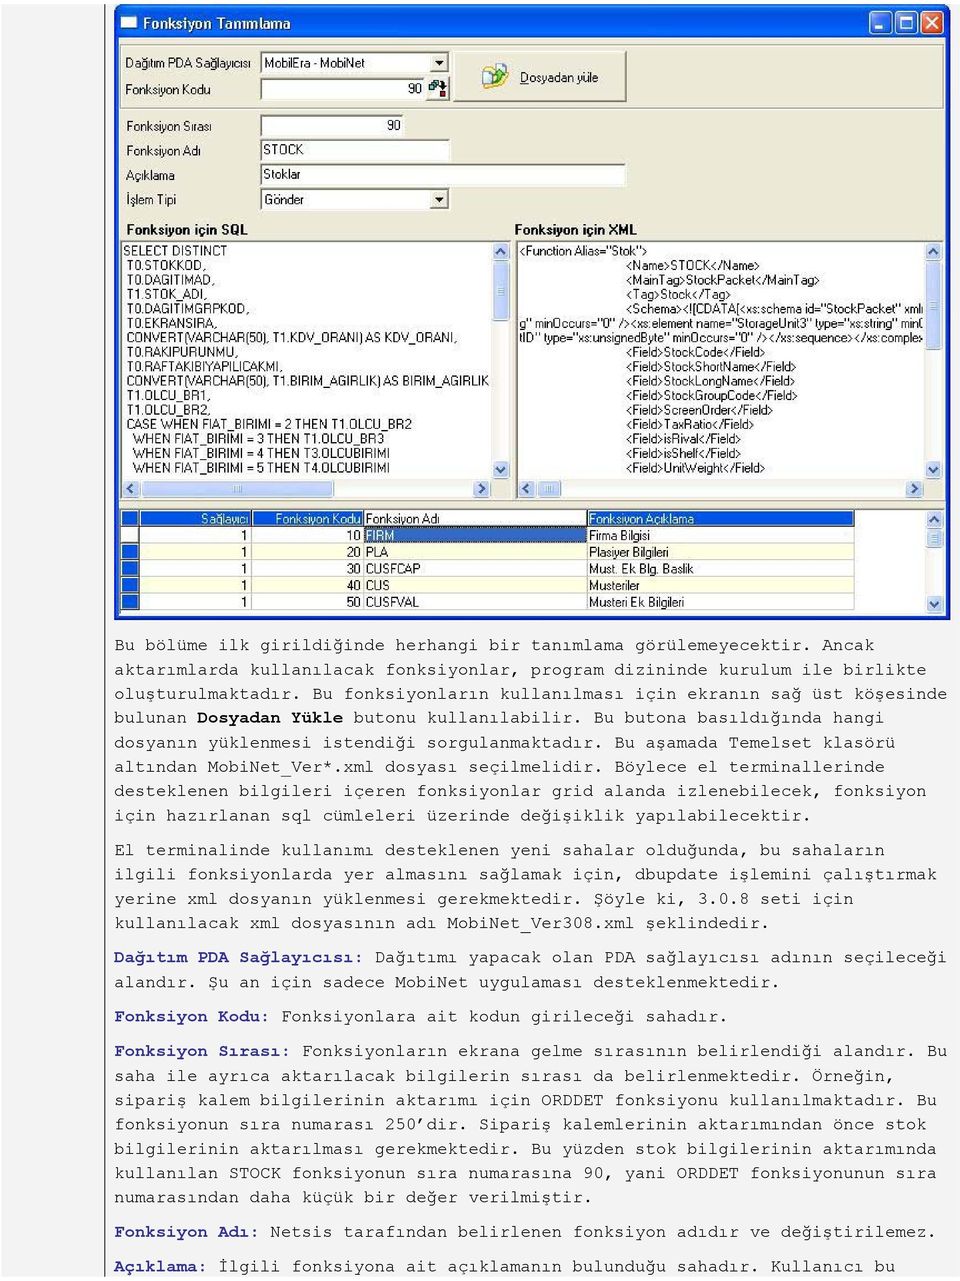 Bu aşamada Temelset klasörü altından MobiNet_Ver*.xml dosyası seçilmelidir.